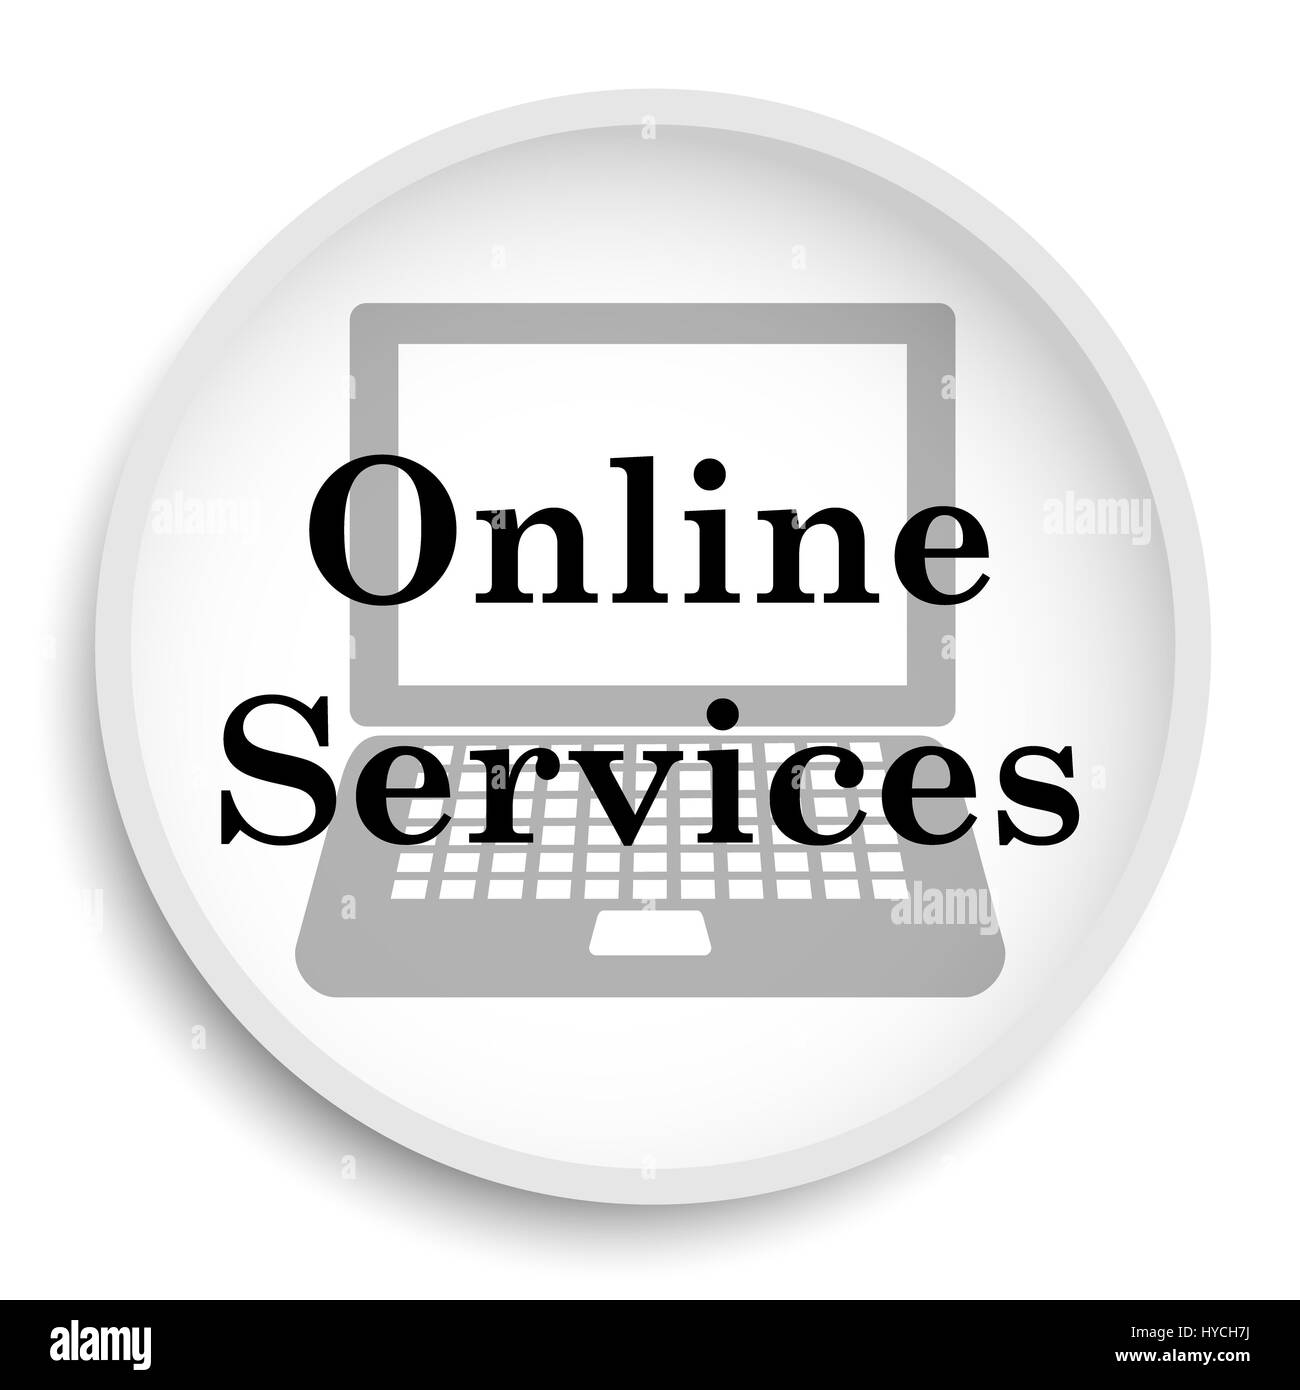 Dịch vụ trực tuyến của chúng tôi sẽ mang đến cho bạn sự tiện lợi và dễ dàng trong việc sử dụng. Bạn chỉ cần nhấn vào biểu tượng dịch vụ trực tuyến và nút trang web sẽ hiển thị ngay trên nền trắng để đưa bạn đến với nhiều lựa chọn hấp dẫn nhất.